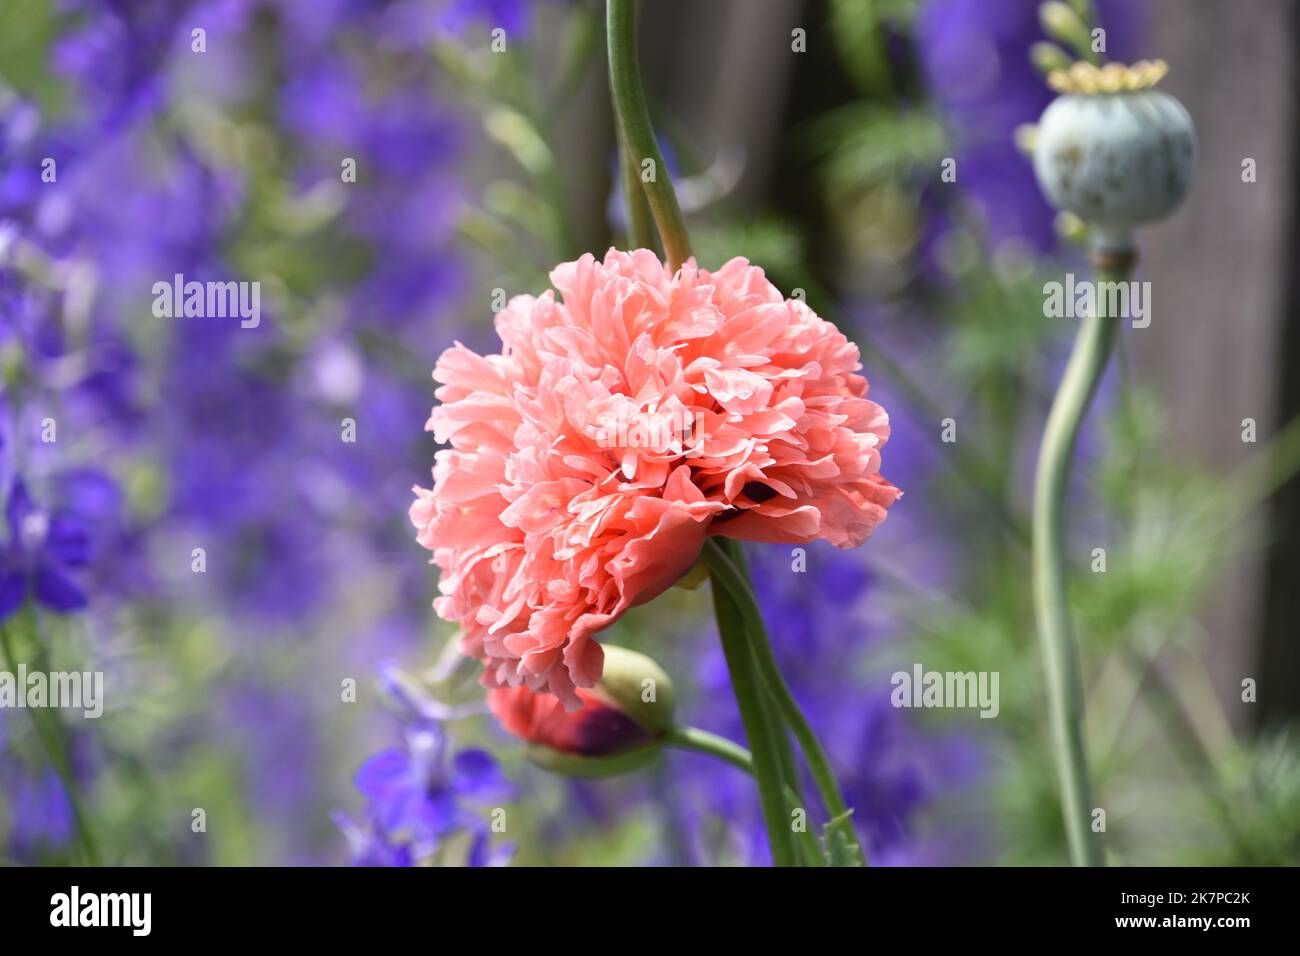 Wunderschöne flauschige rosa Mohnblüte mit purpurem Delphinium im Hintergrund. Stockfoto